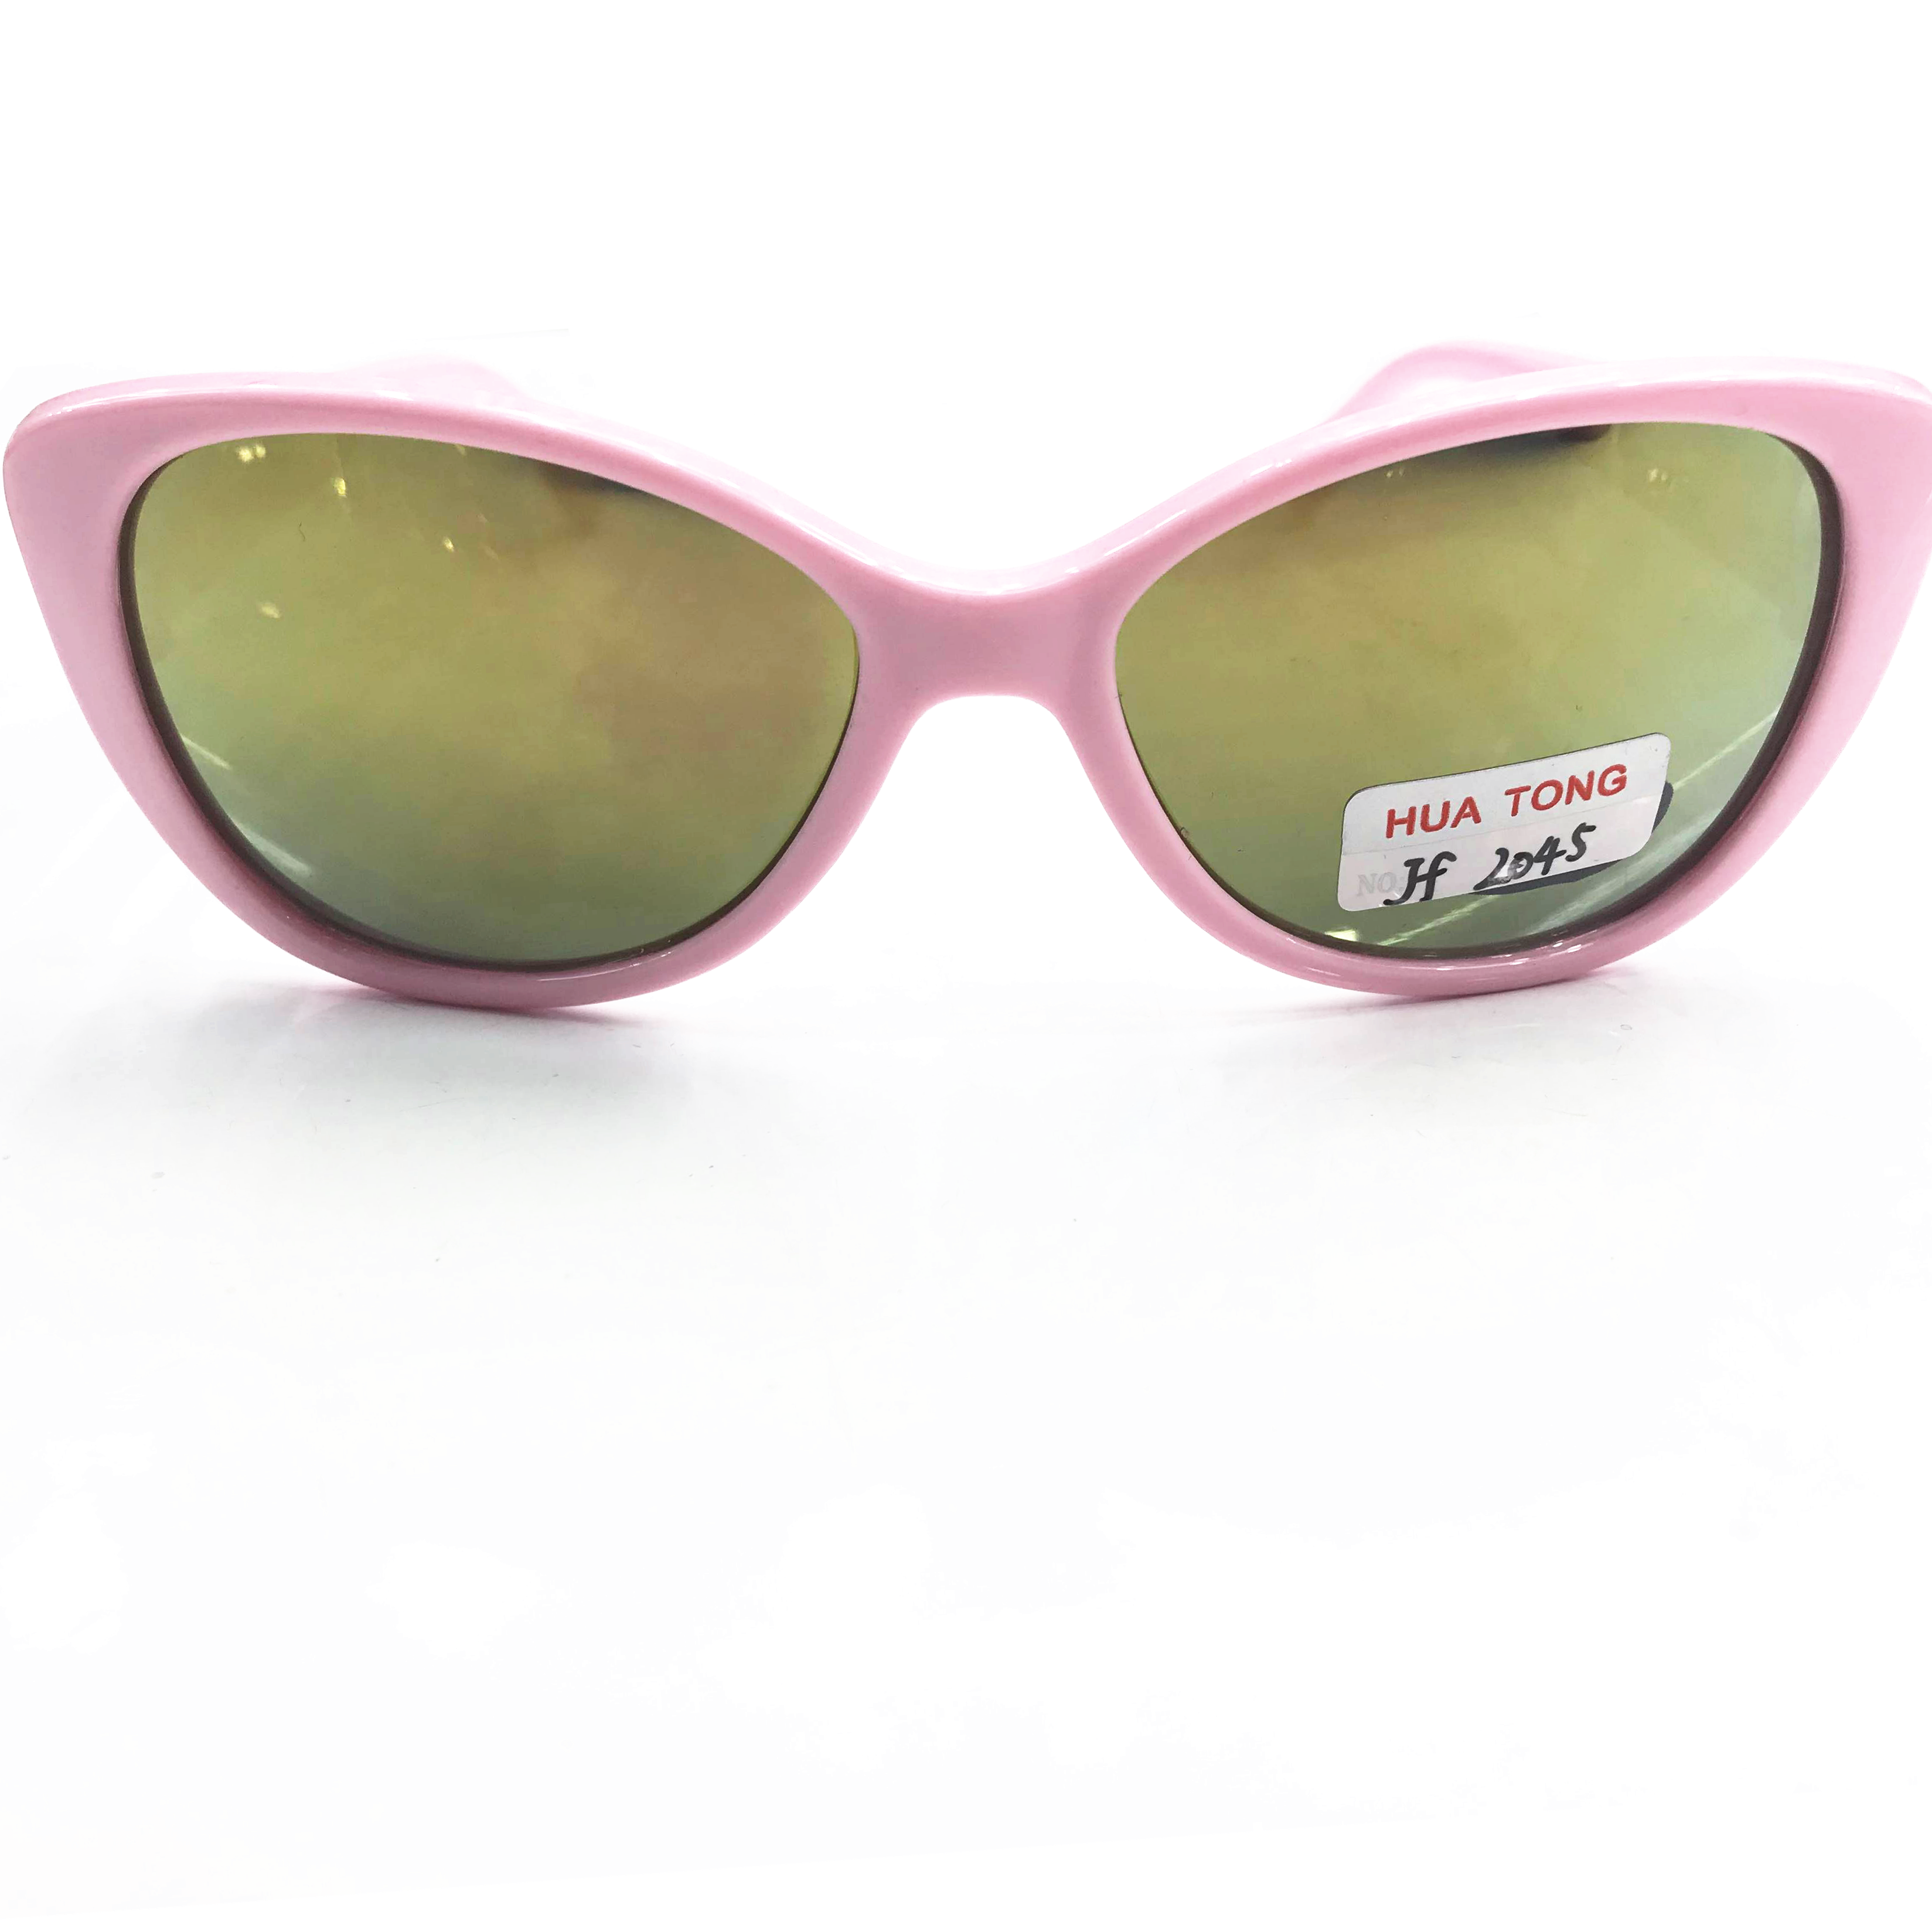 2020最新款儿童时尚太阳镜防紫外线眼镜UV400镀膜1904